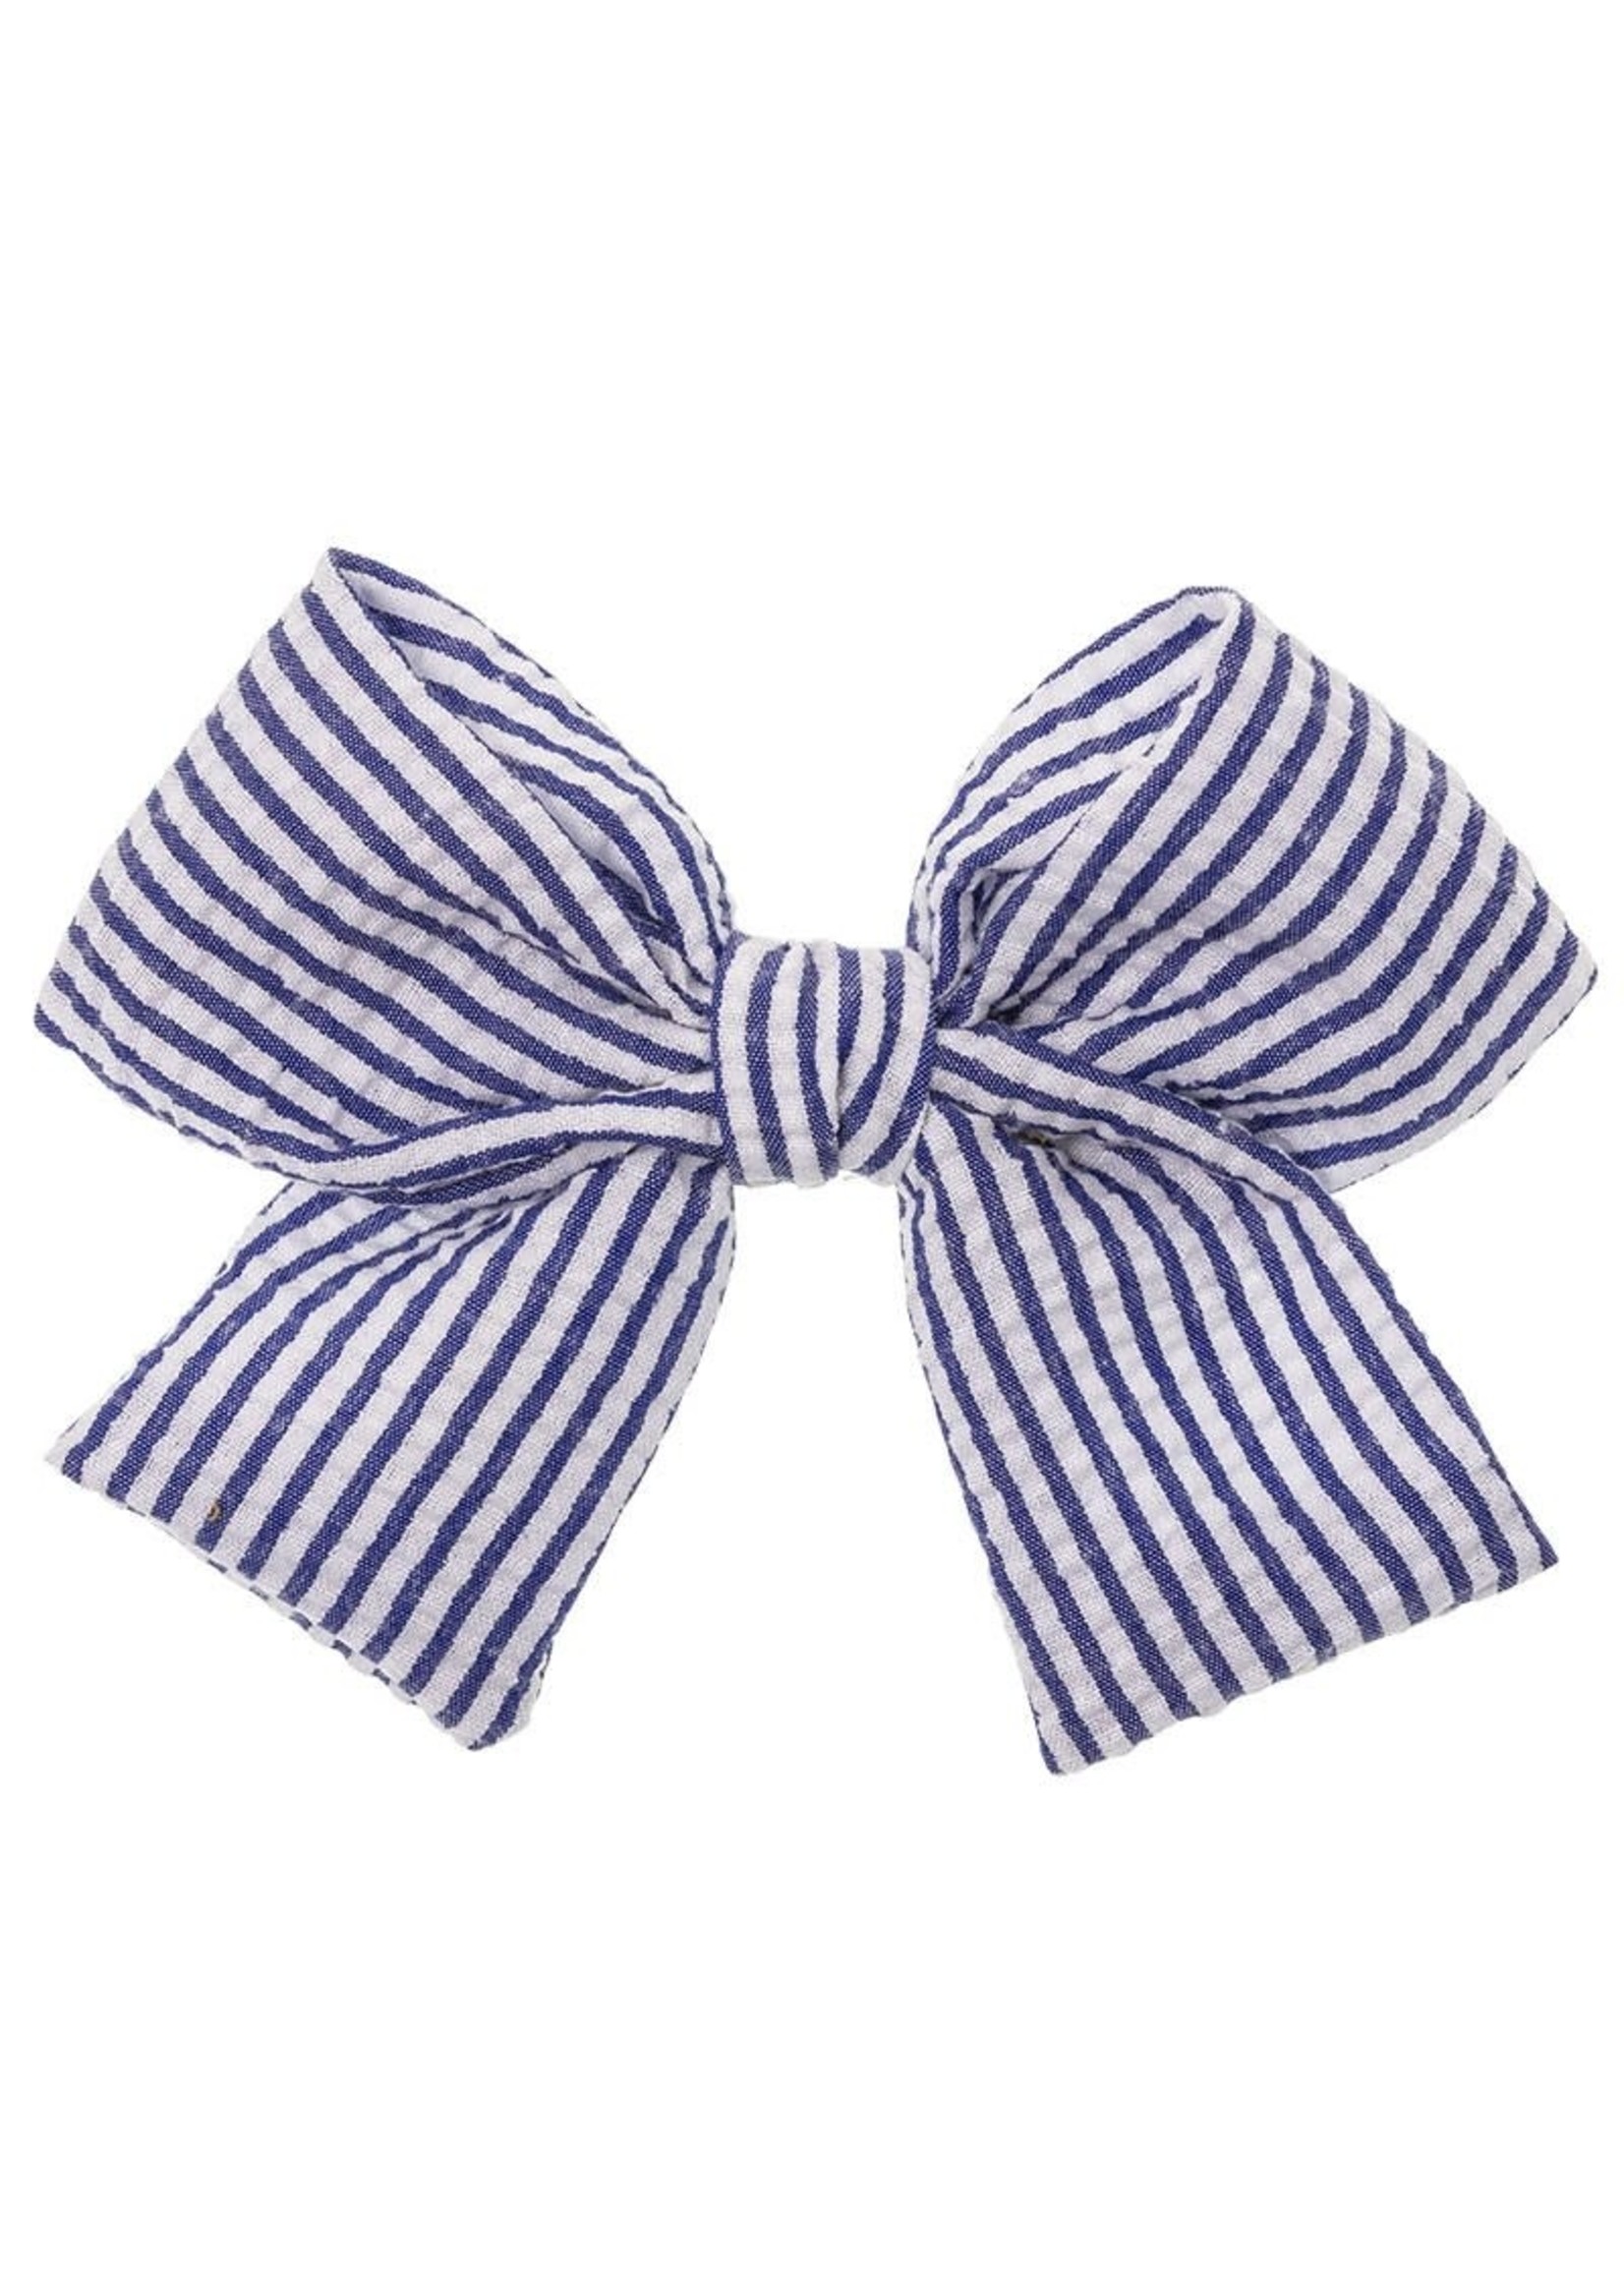 Hair Clip Bow Stripes Navy